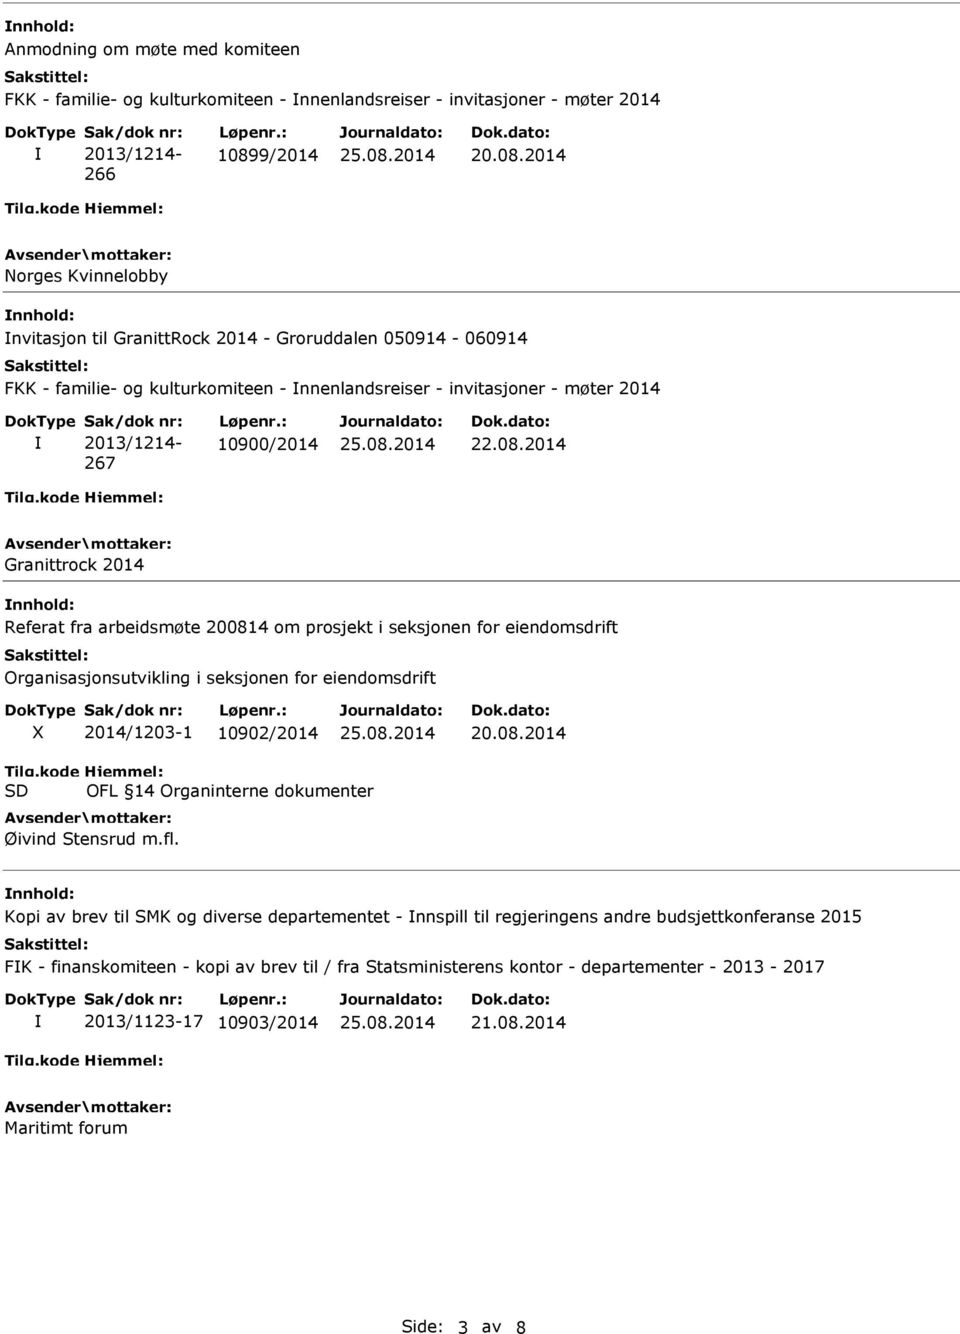 2014 Norges Kvinnelobby nnhold: nvitasjon til GranittRock 2014 - Groruddalen 050914-060914 FKK - familie- og kulturkomiteen - nnenlandsreiser - invitasjoner - møter 2014 2013/1214-267 10900/2014